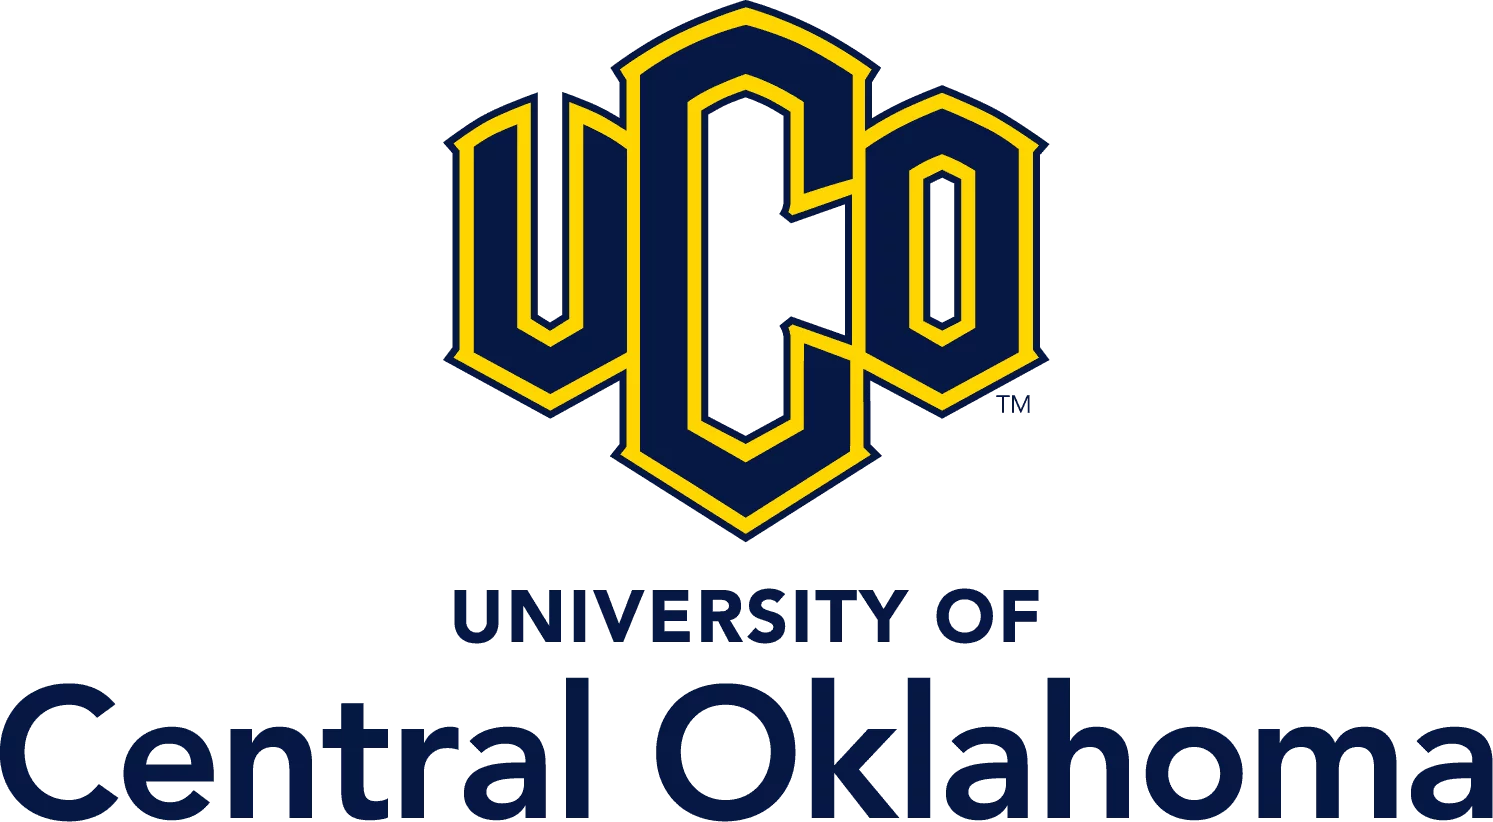 Bourses d’études internationales M. Et Mlle UCO 2022 de l’Université de Central Oklahoma, États-Unis